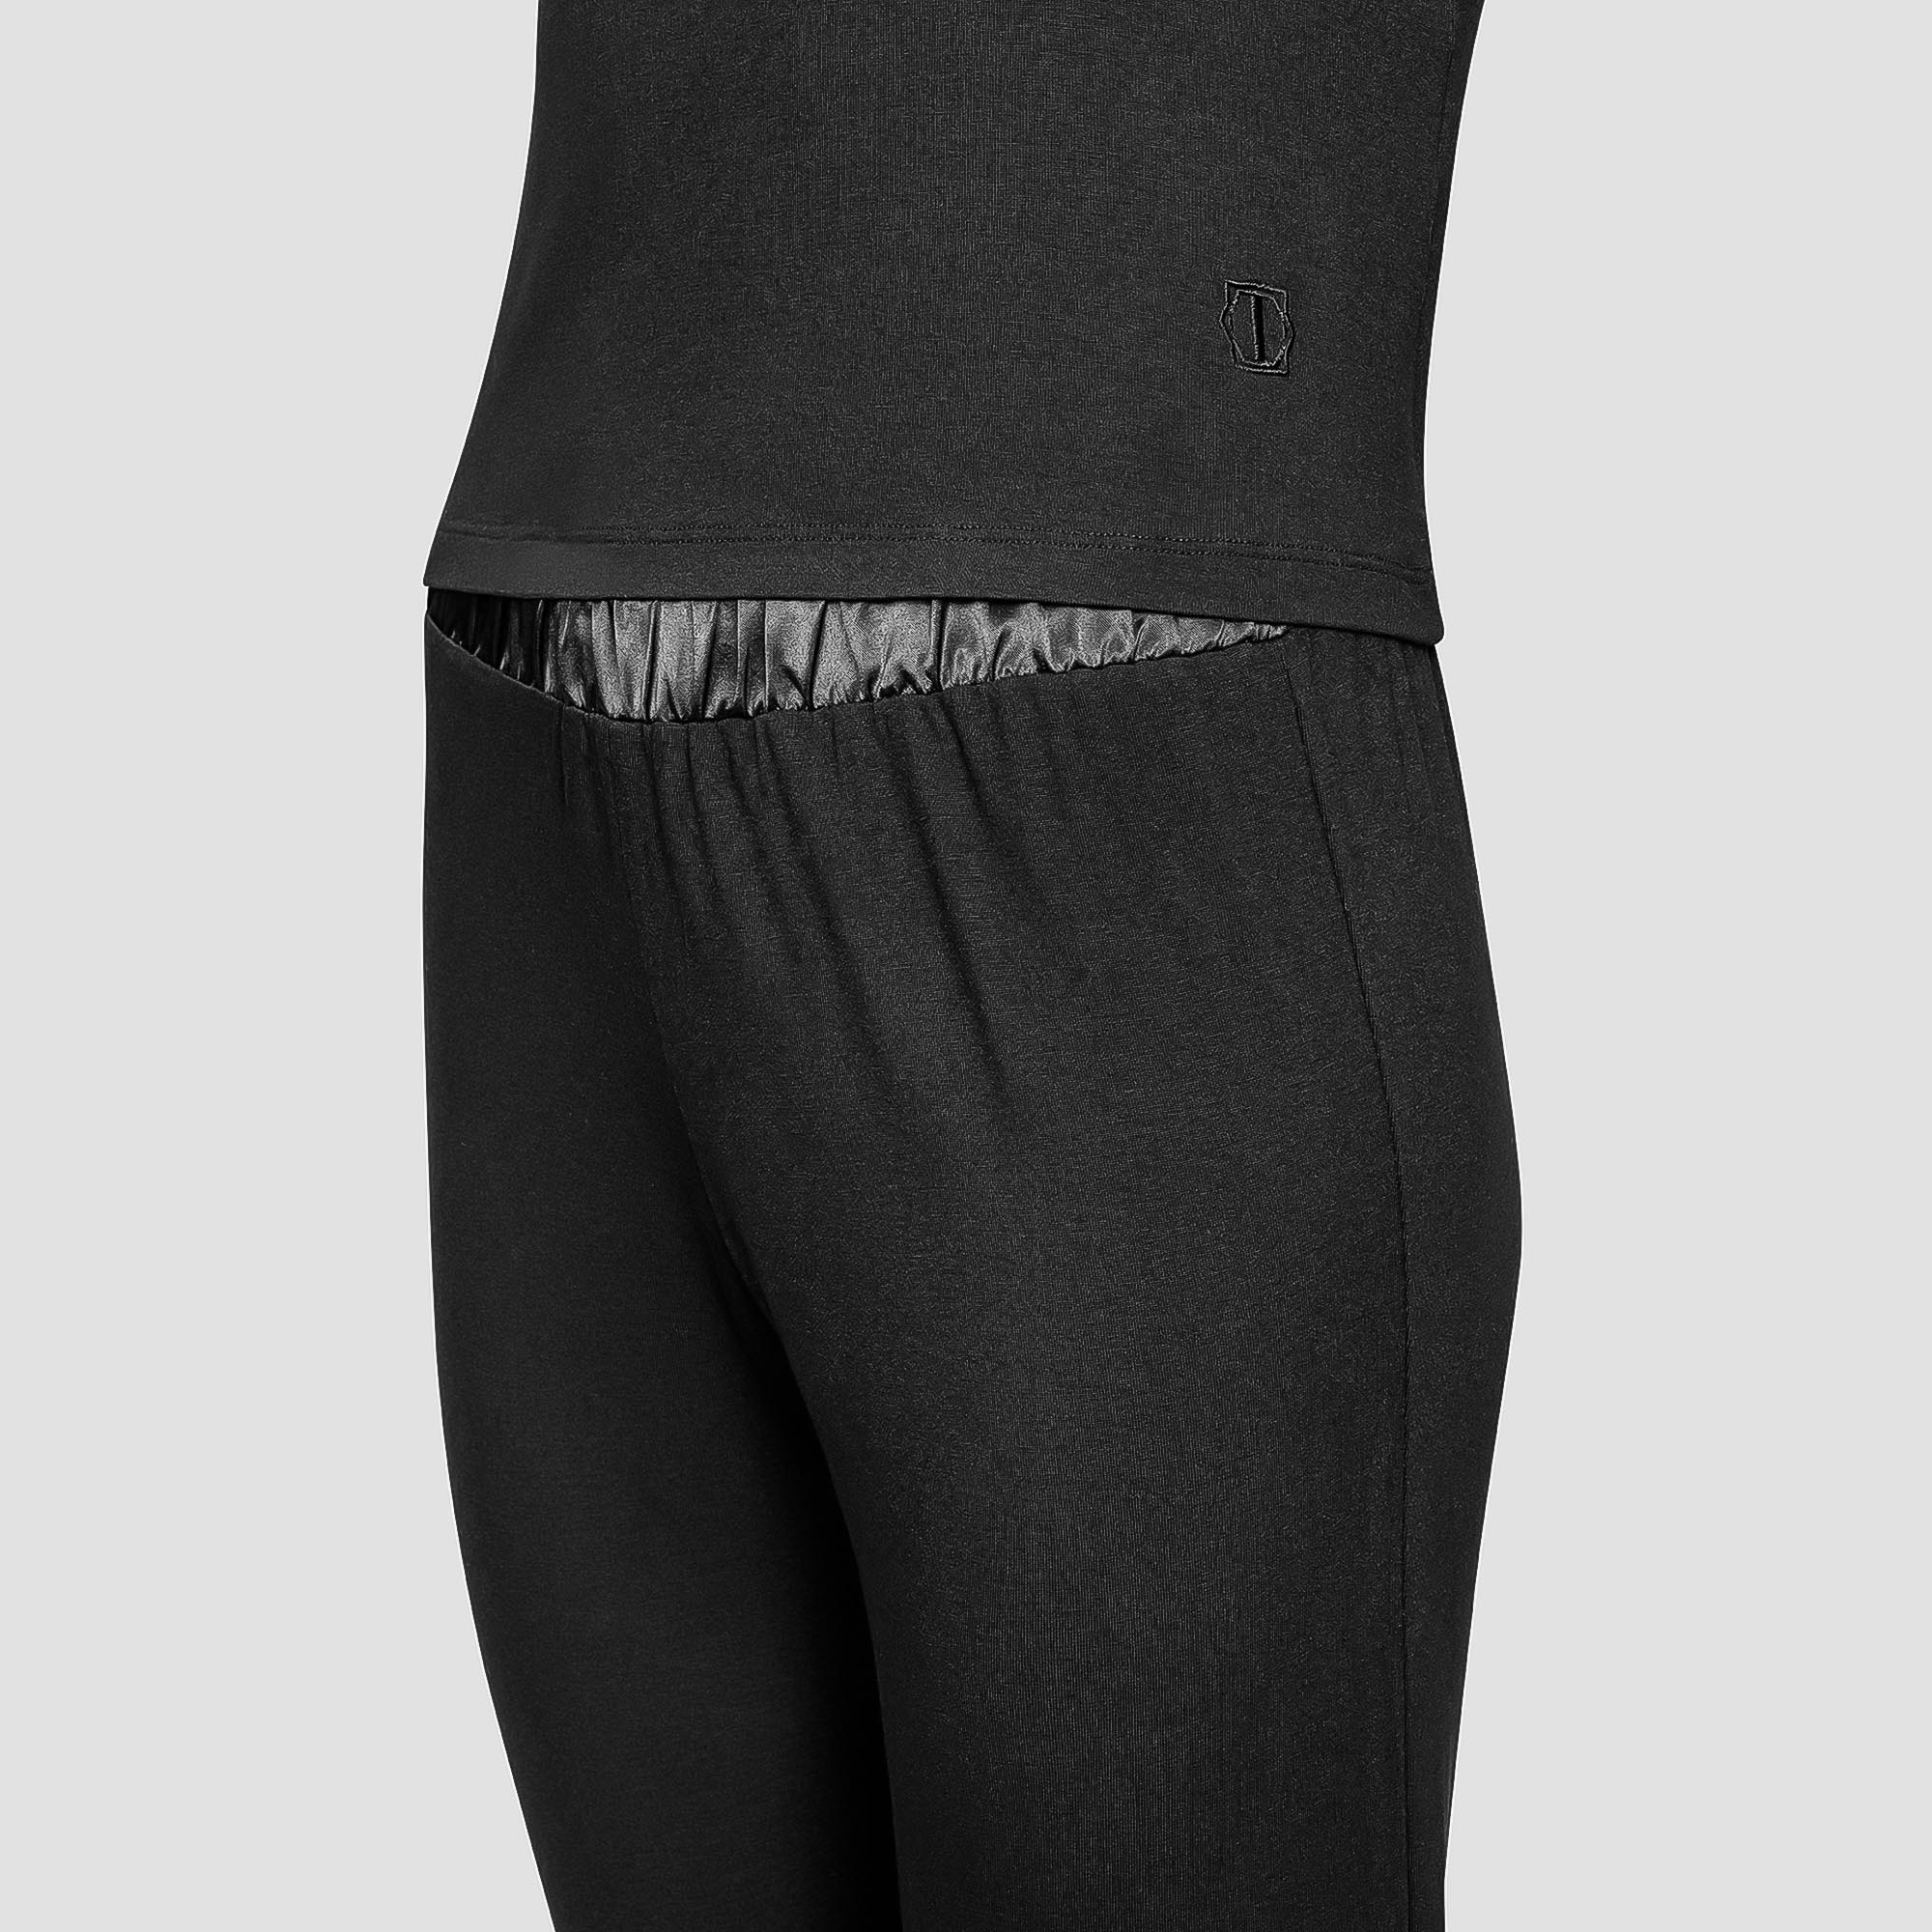 Пижама Togas Ингелла черная женская XL(50) 2 предмета, размер XL(50) - фото 2